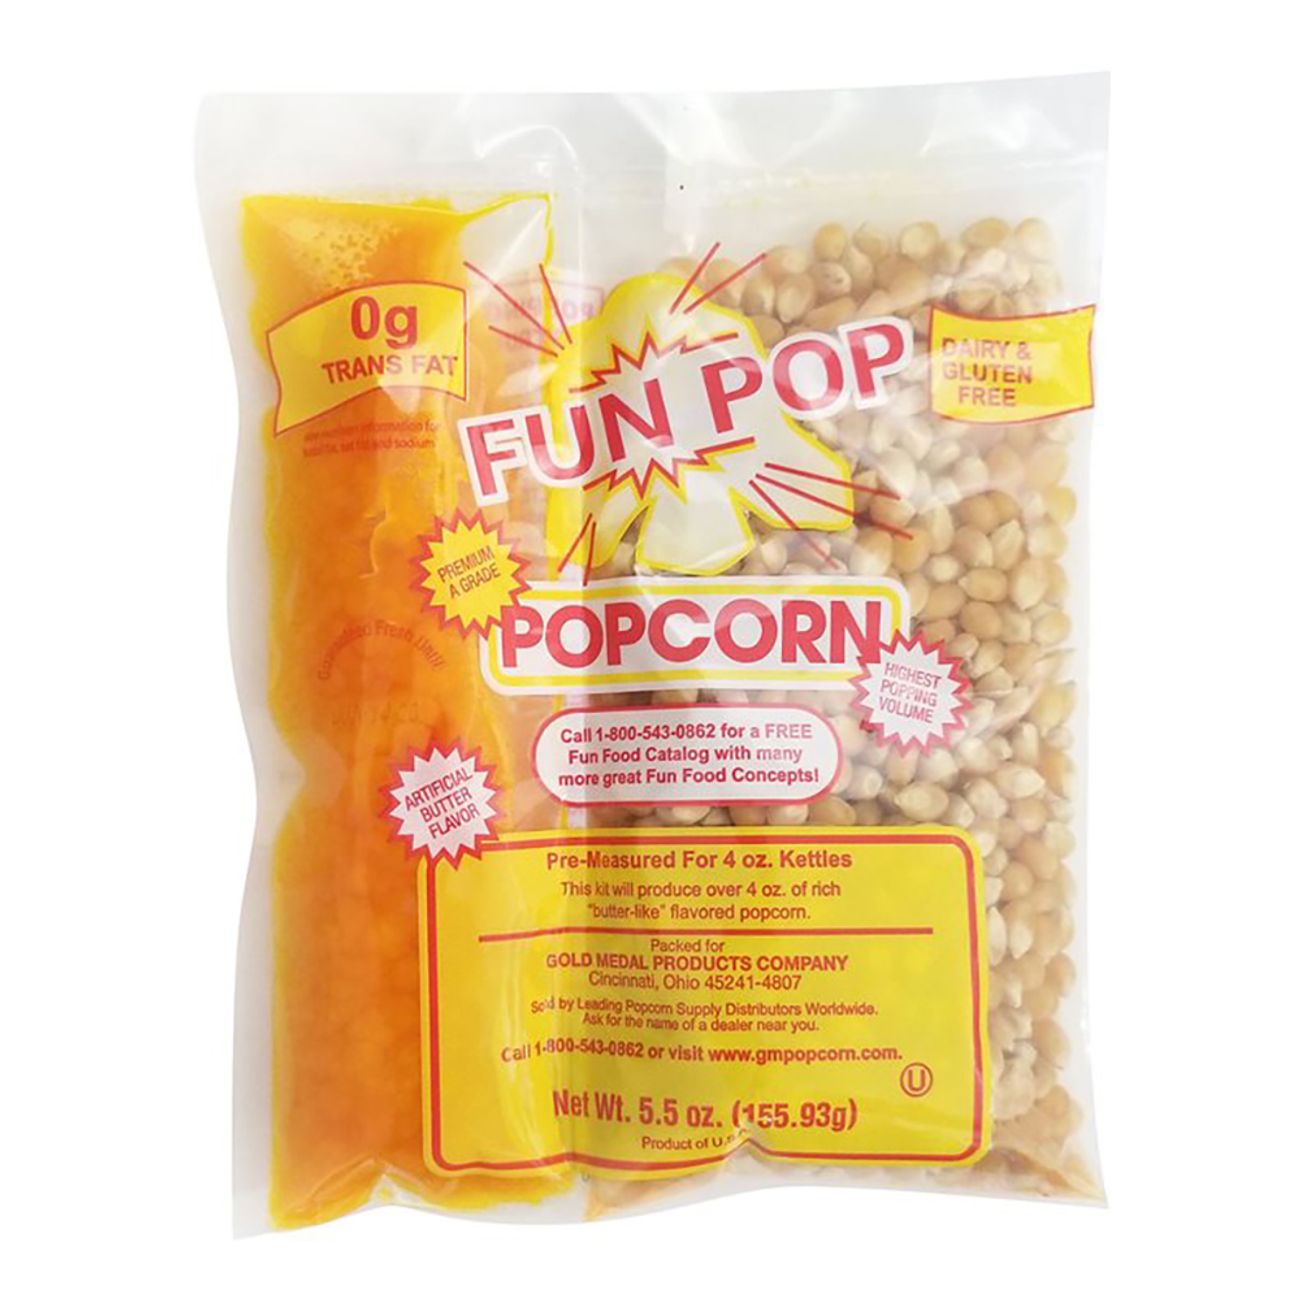 mega-pop-popcorn-kit-86431-5